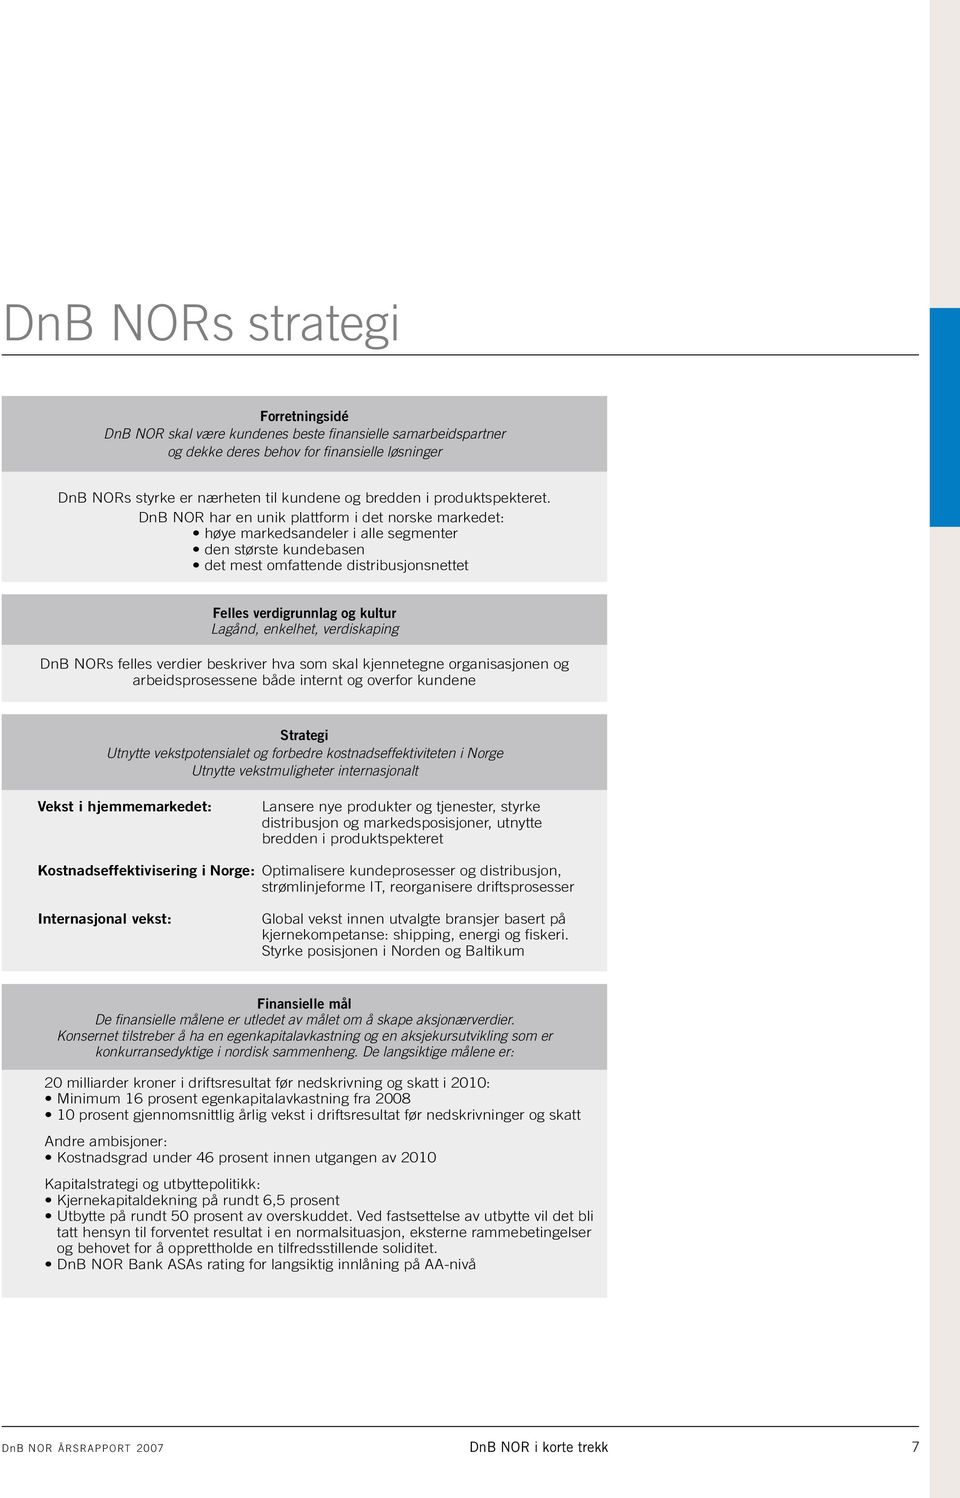 DnB NOR har en unik plattform i det norske markedet: høye markedsandeler i alle segmenter den største kundebasen det mest omfattende distribusjonsnettet Felles verdigrunnlag og kultur Lagånd,